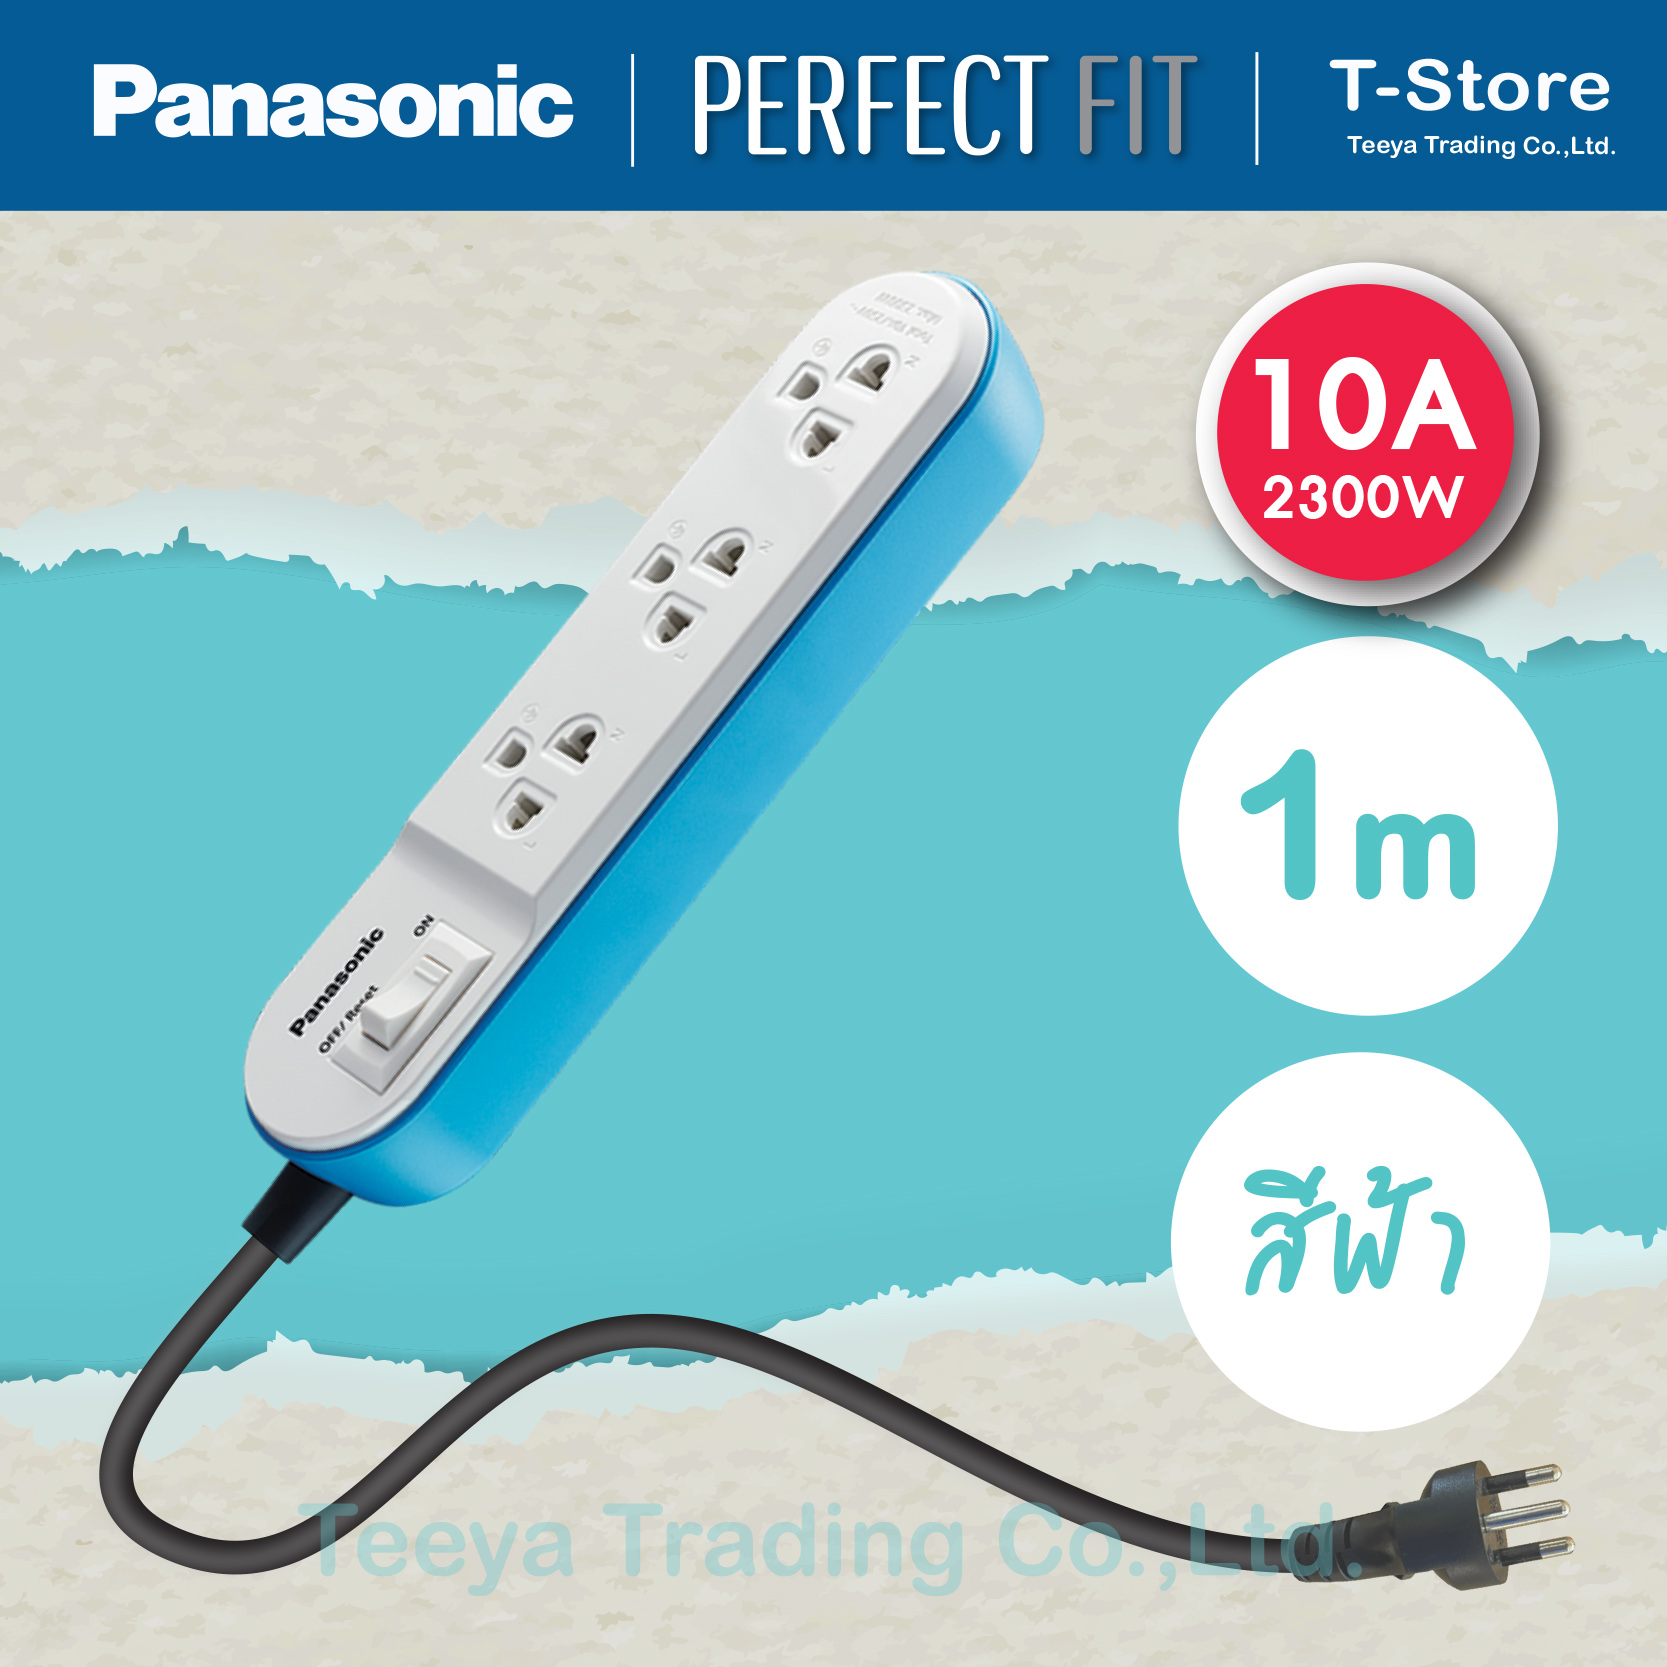 Panasonic Perfect FIT  รุ่น WCHG 24132 ปลั๊กพ่วง 3 เต้ารับ 1 สวิตช์คุมเมน 10A 2300W   สายยาว 1 M (มีสินค้าพร้อมส่ง สั่งซื้อได้เลย)